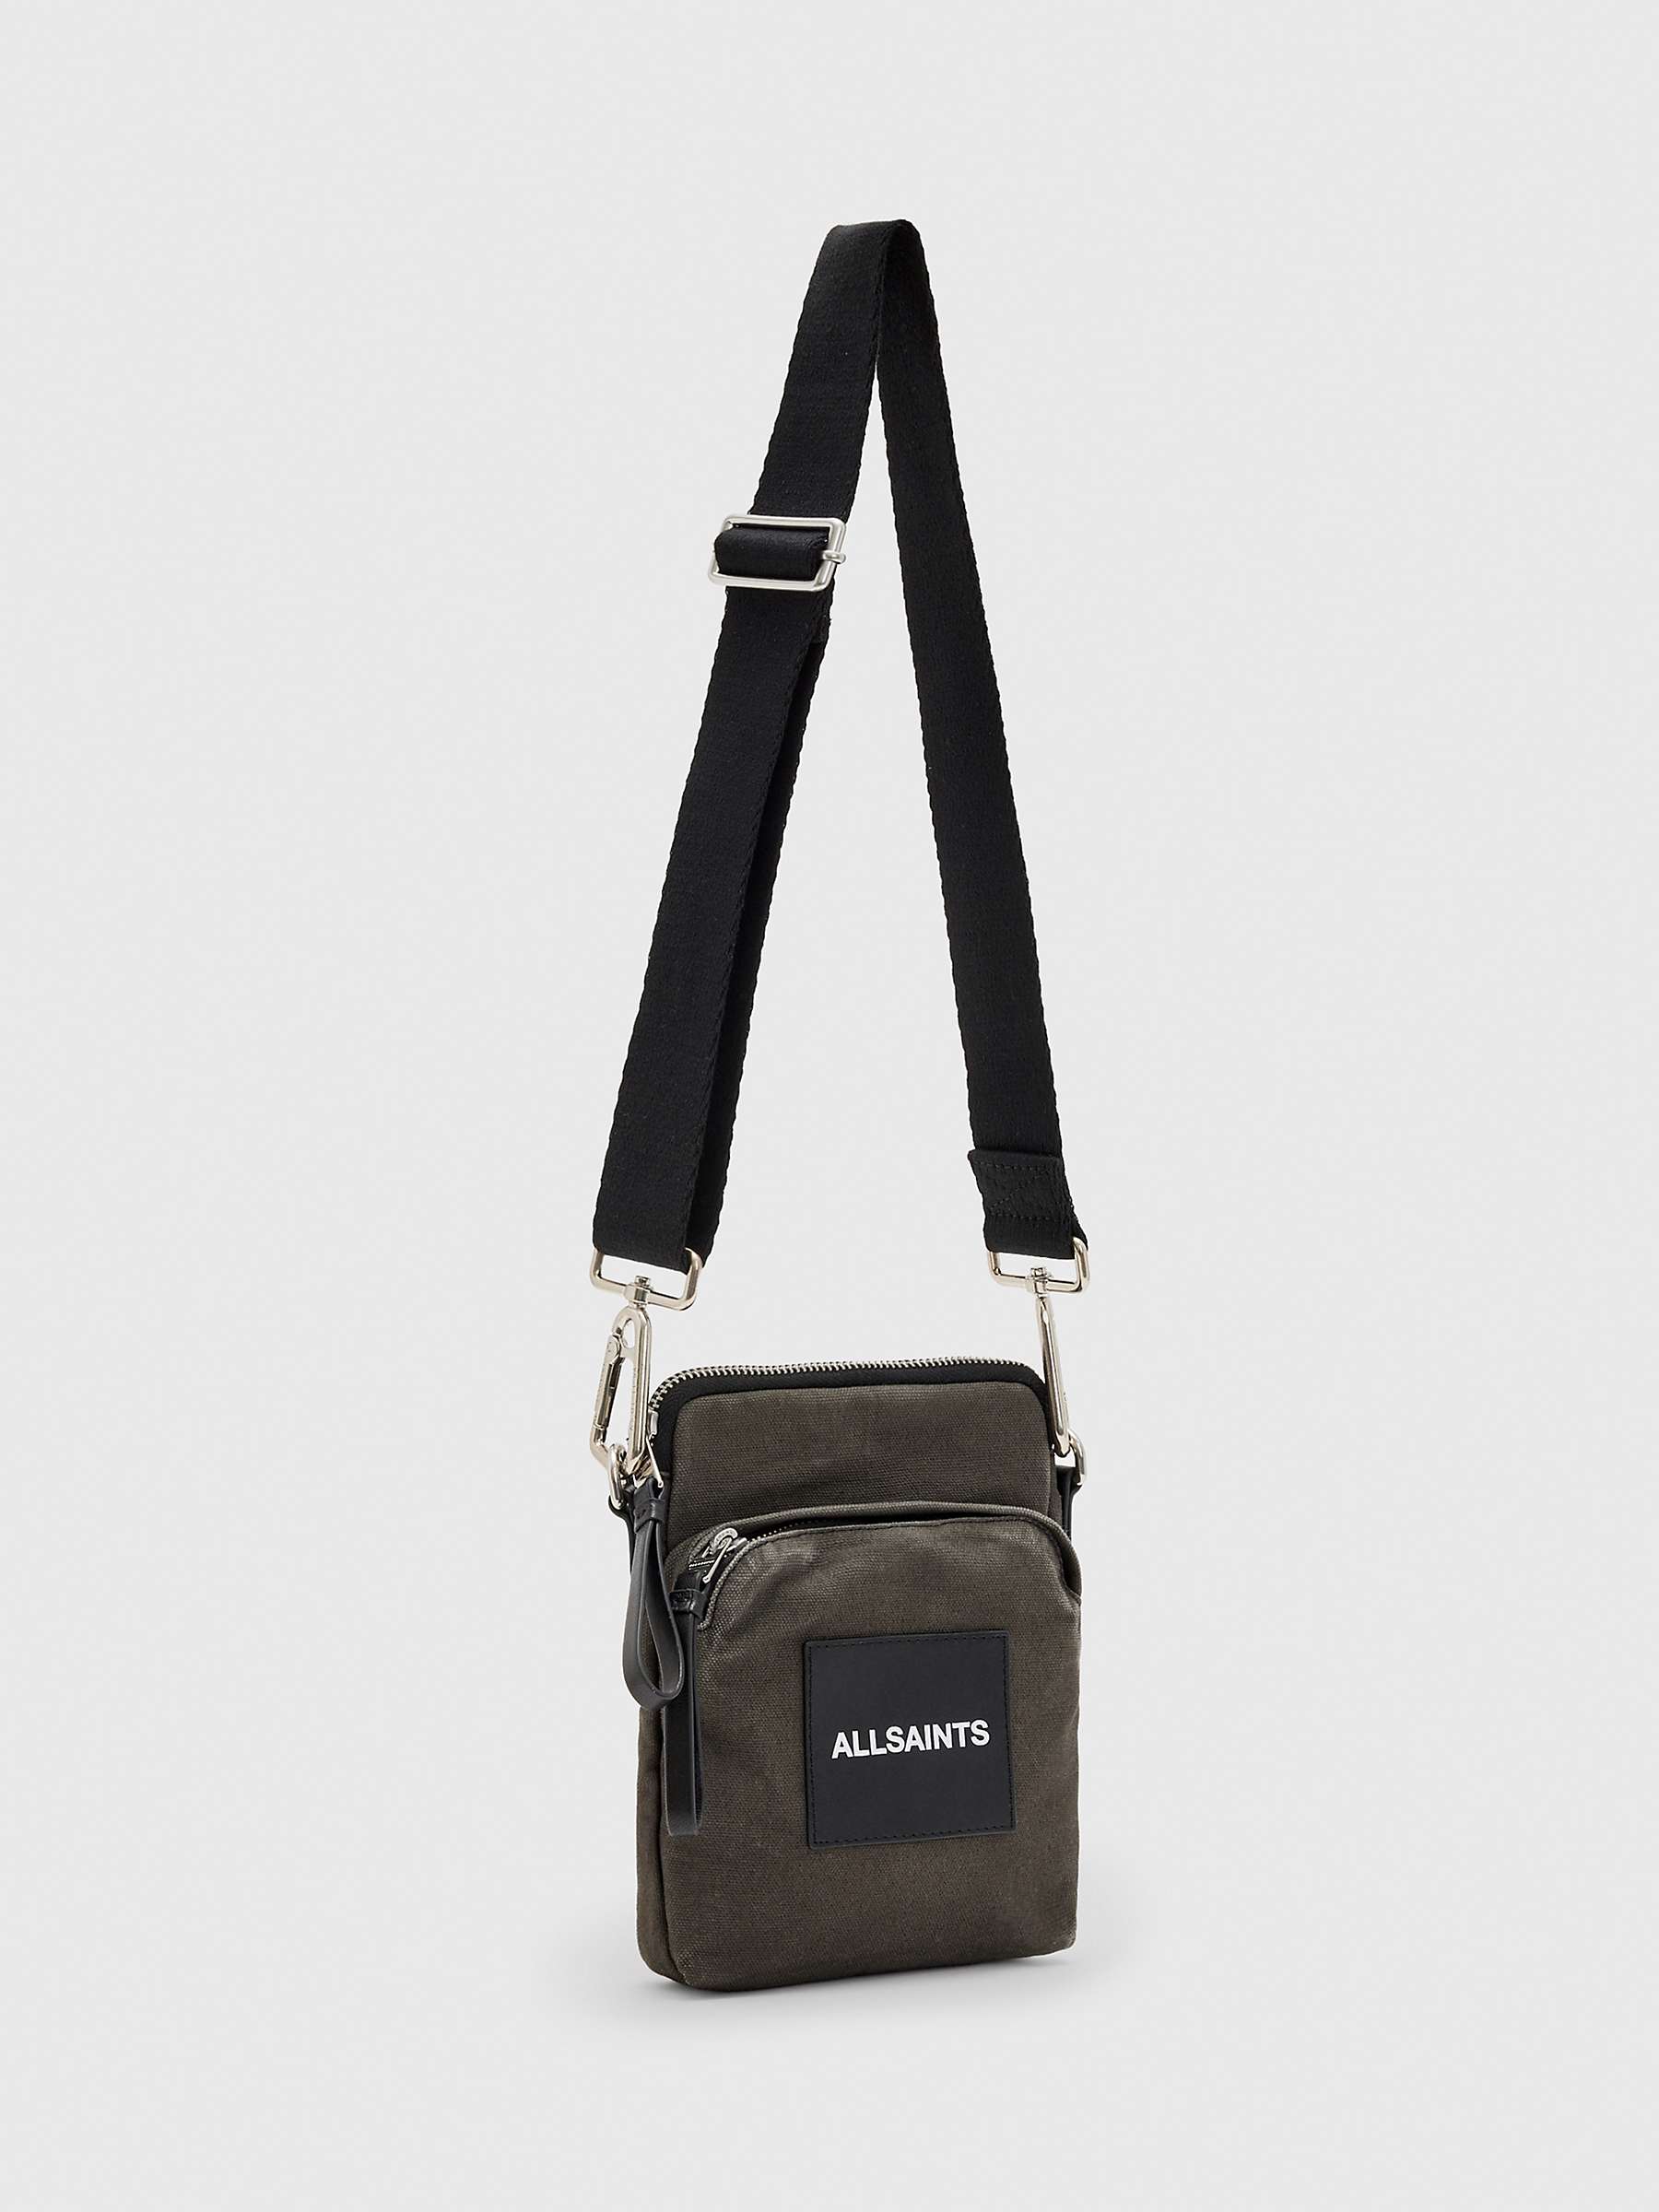 Buy AllSaints Pouch Bag, Black Online at johnlewis.com